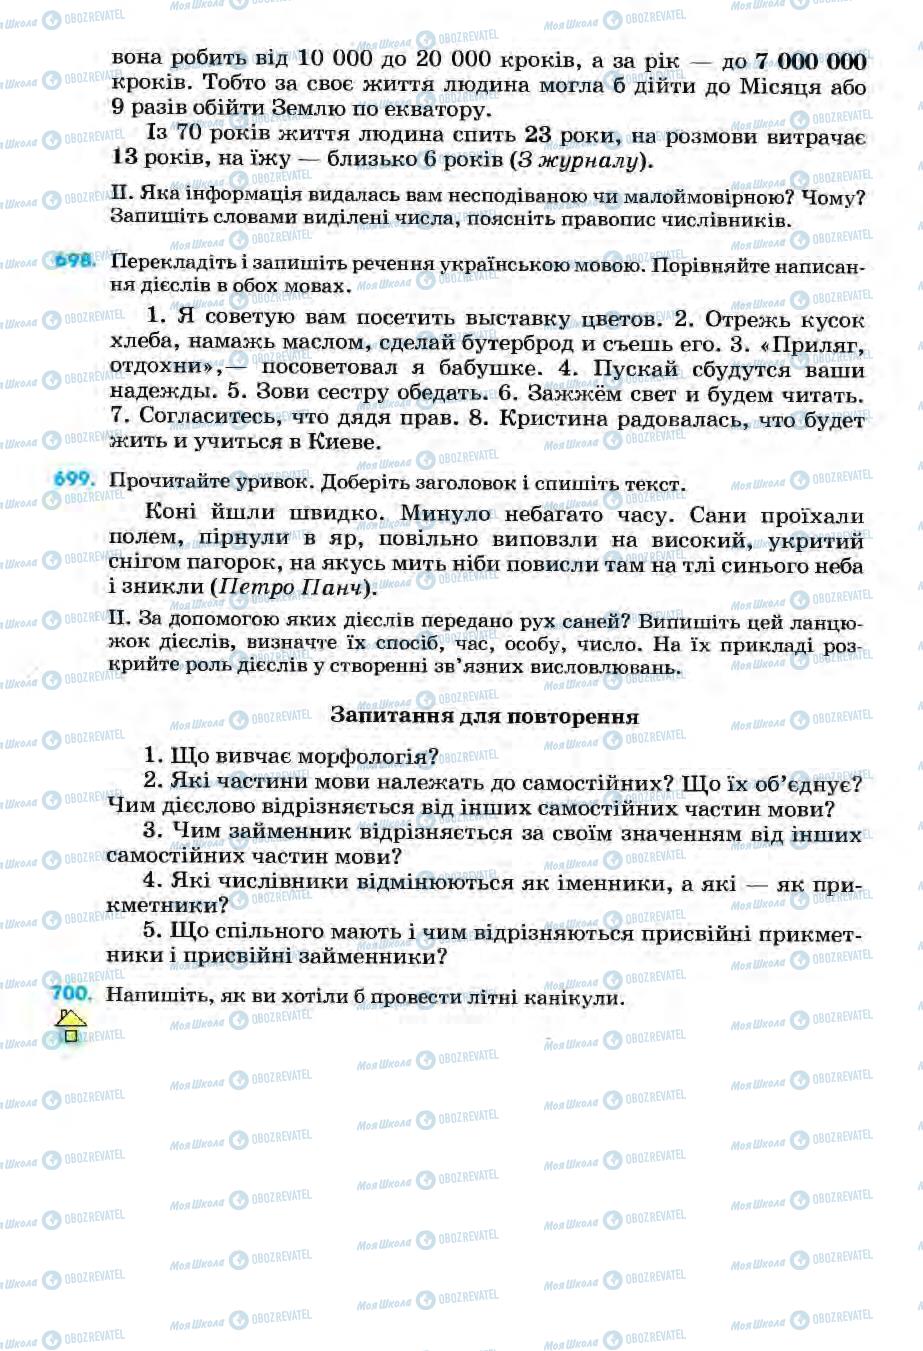 Підручники Українська мова 6 клас сторінка 230